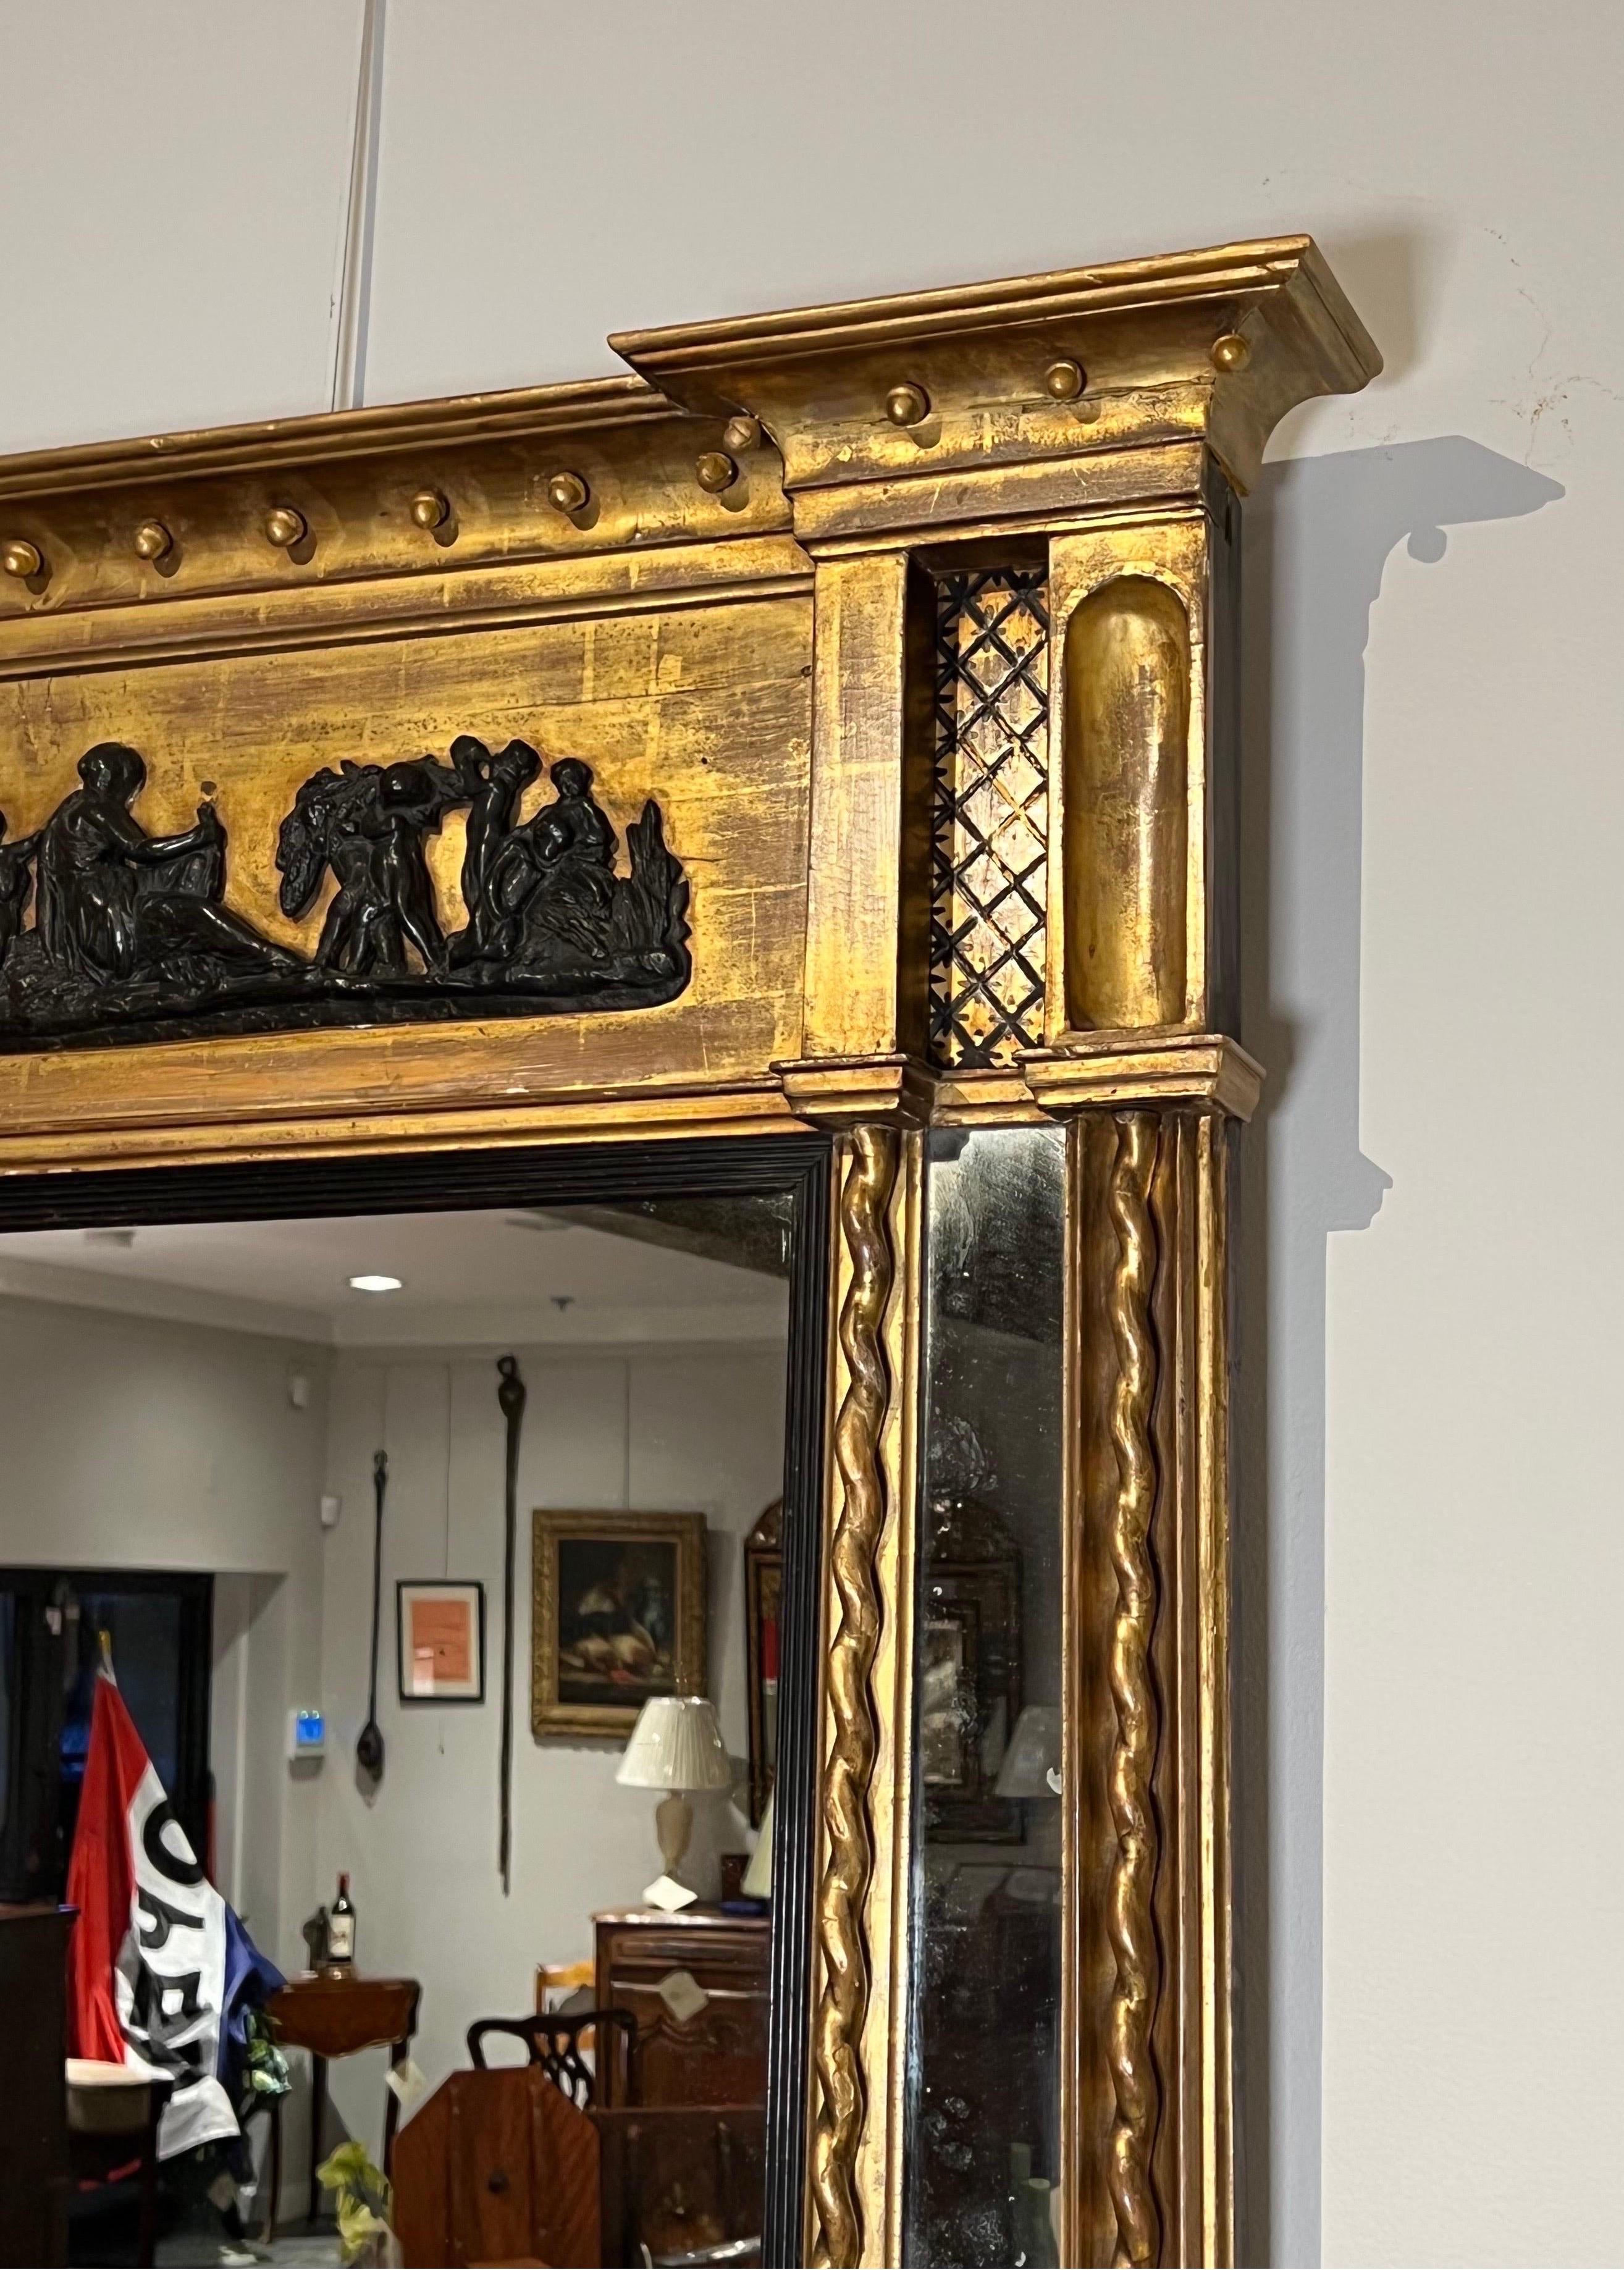 Miroir néoclassique en bois doré. Un grand miroir rectangulaire entouré de moulures ébénisées, flanqué de 2 panneaux plus petits sous un panneau de composition ébénisé sous une moulure en couronne à glands et dorures.